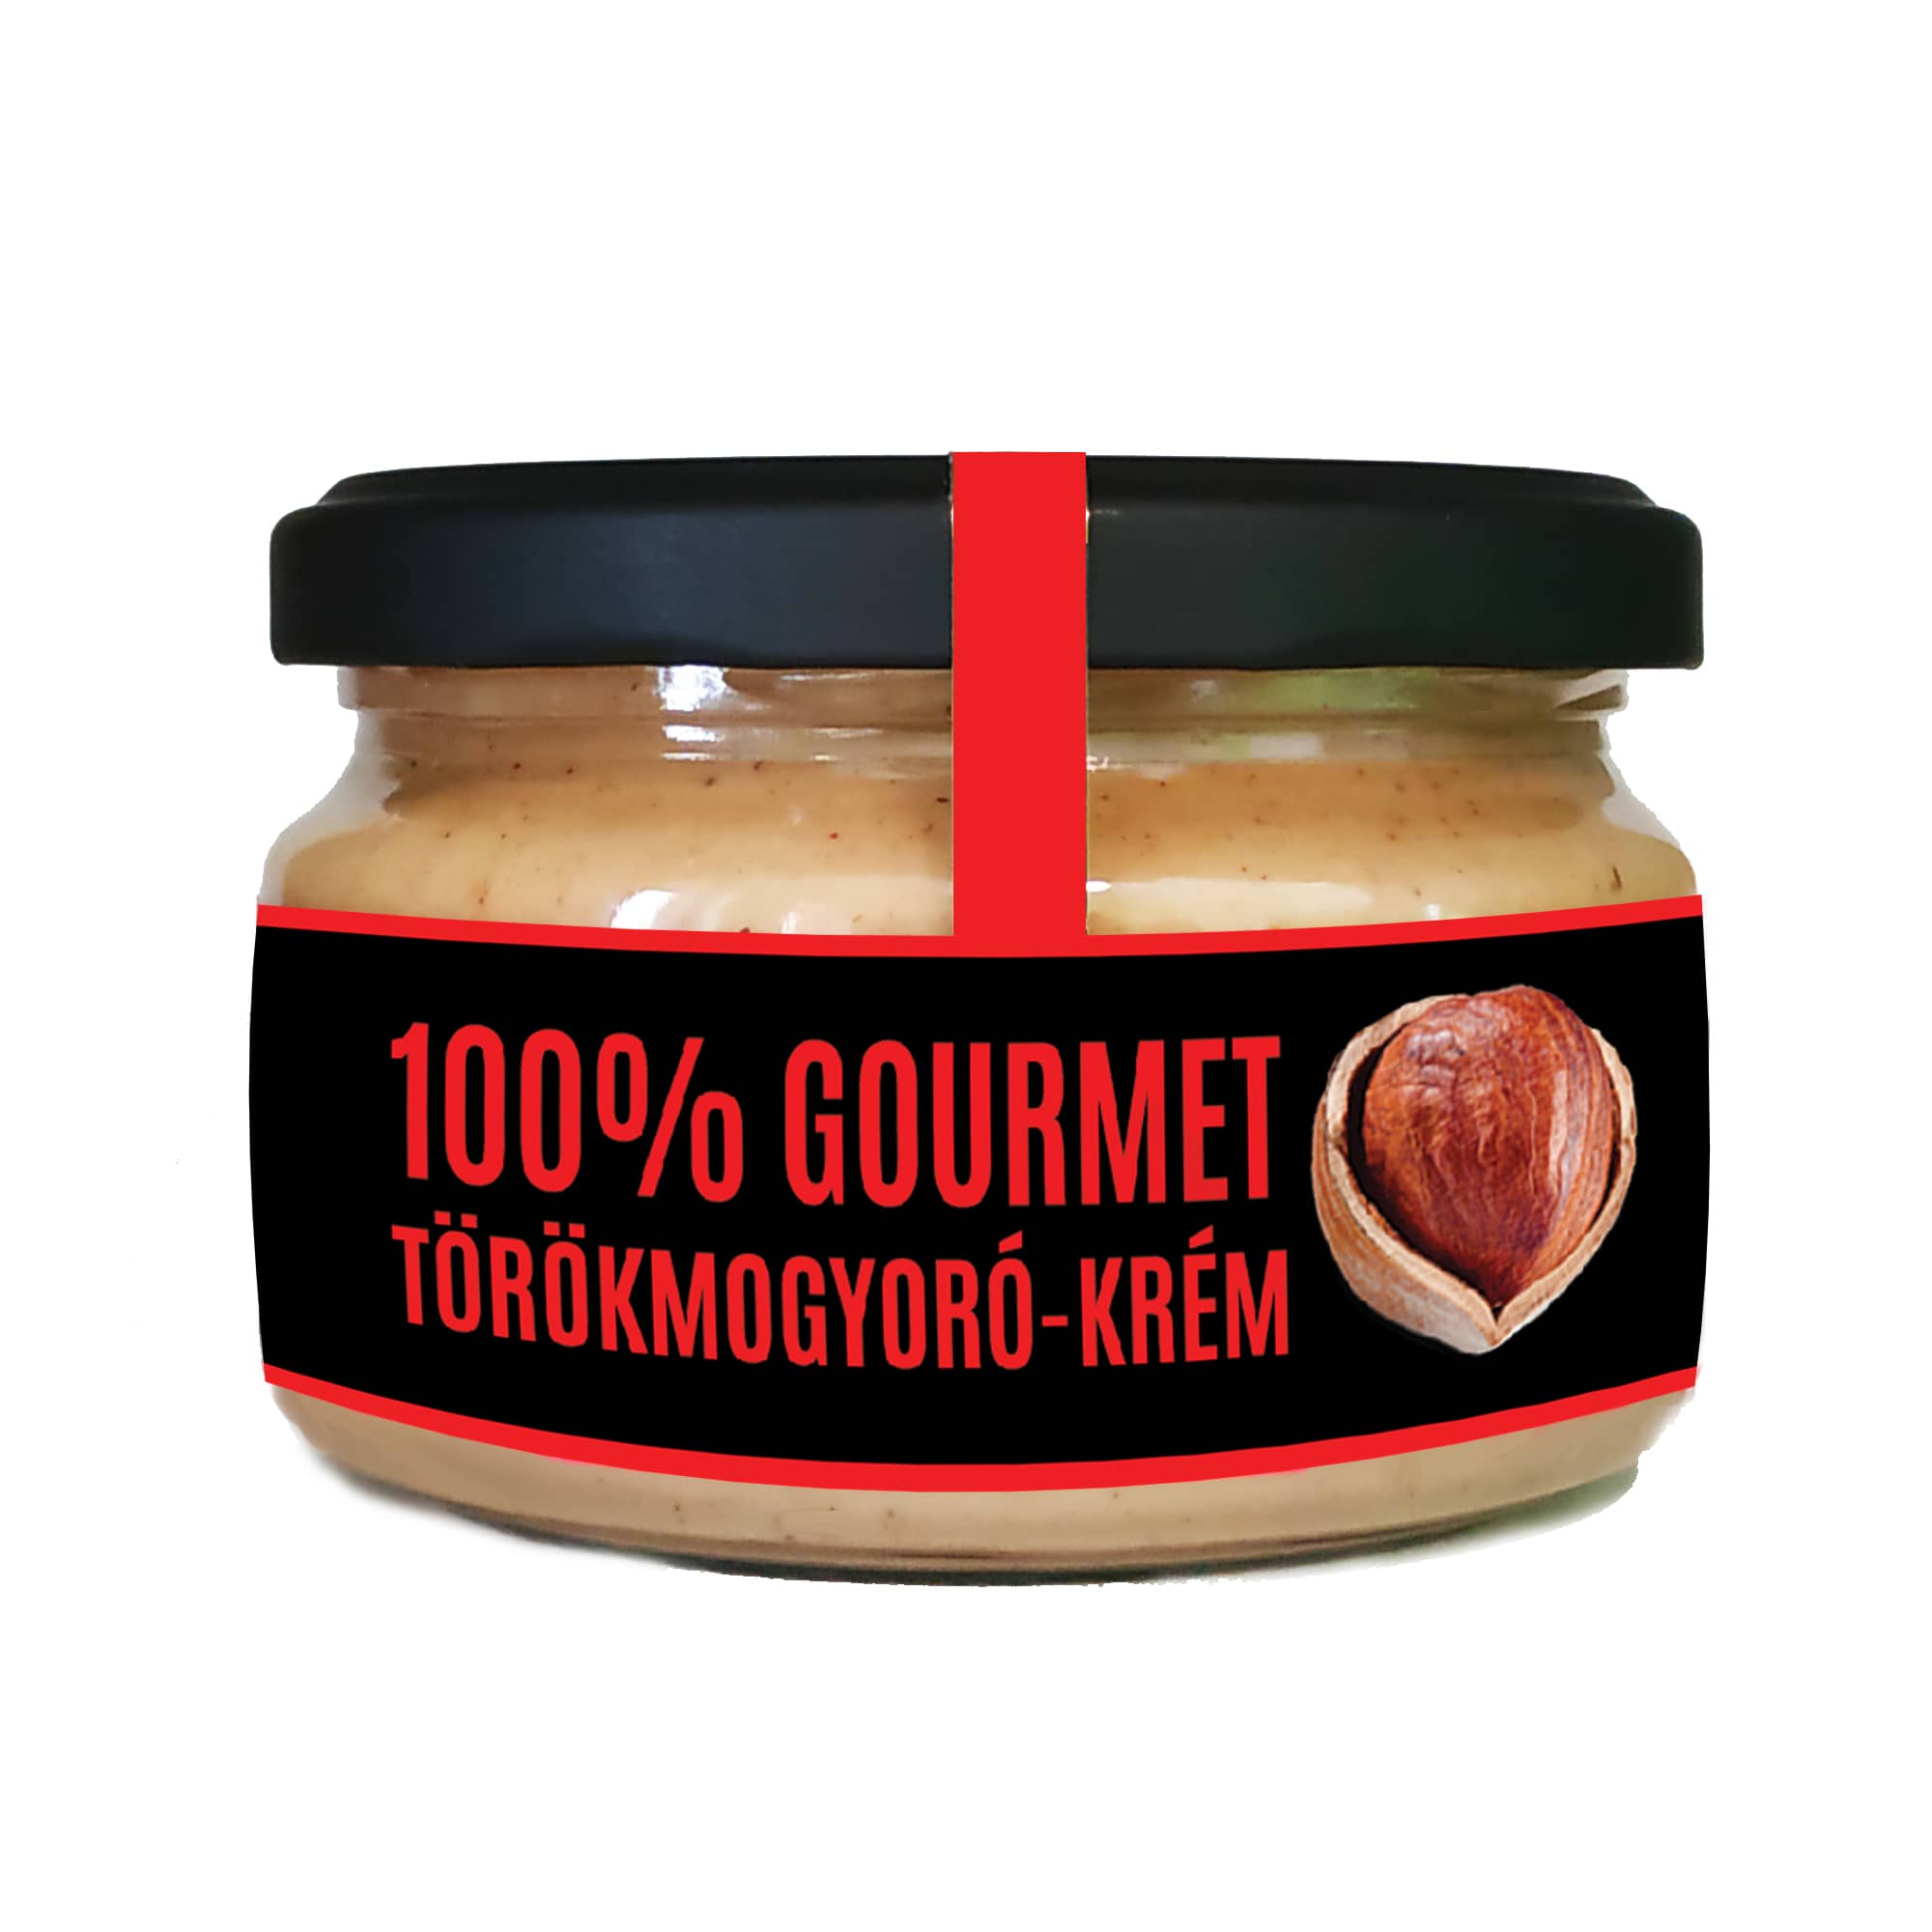 Valentine’s 100% gourmet törökmogyorókrém 200 g